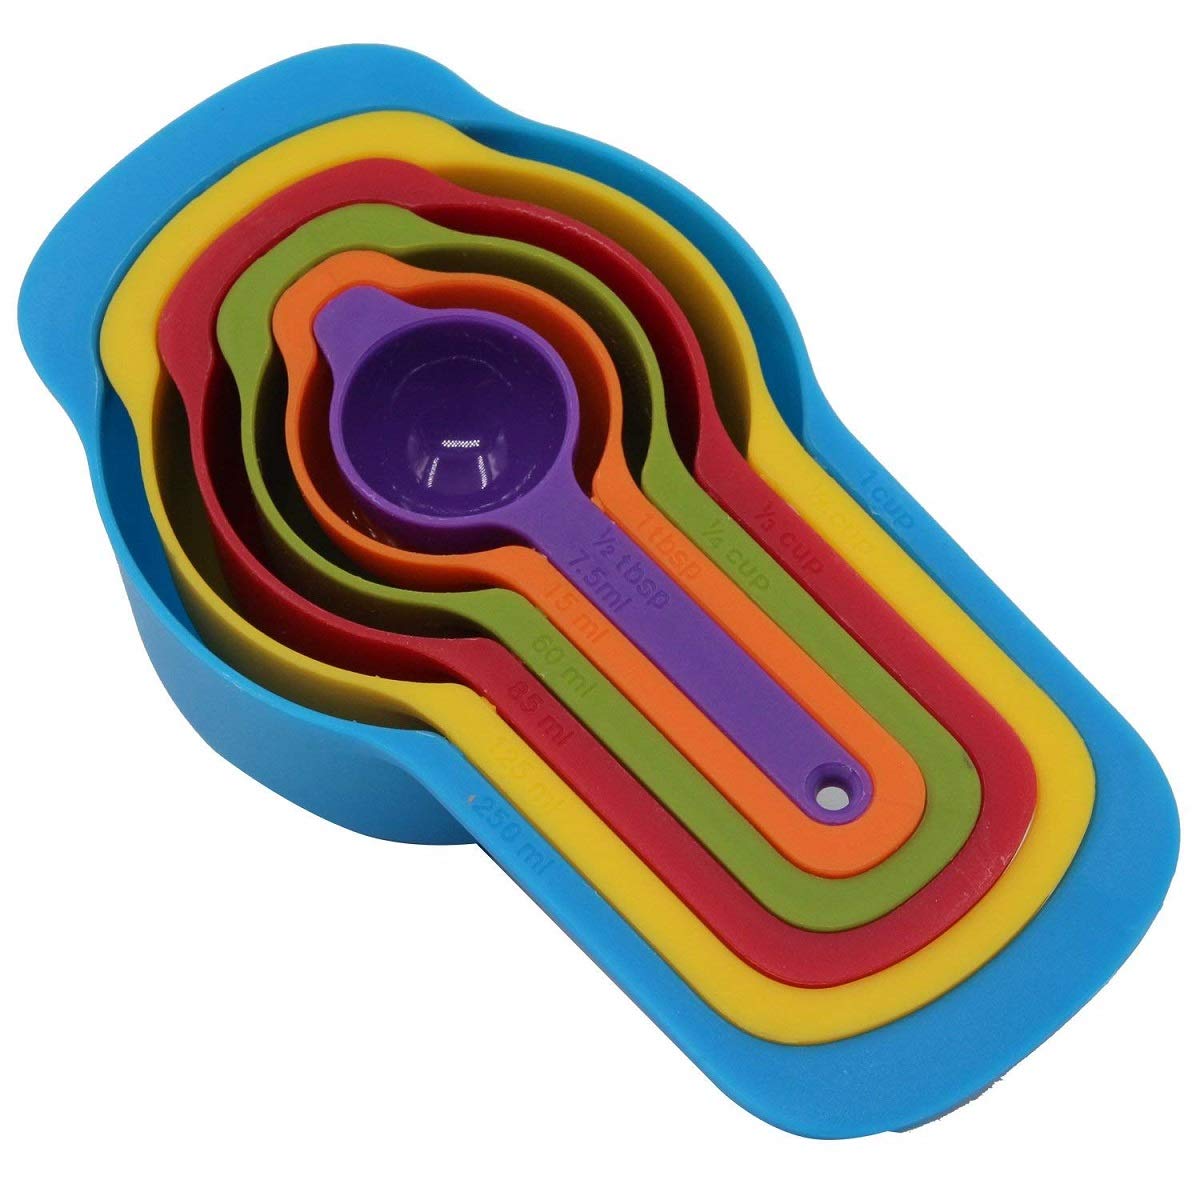 Measuring Cup & Spoon 6Pcs Set Colorful Plastic